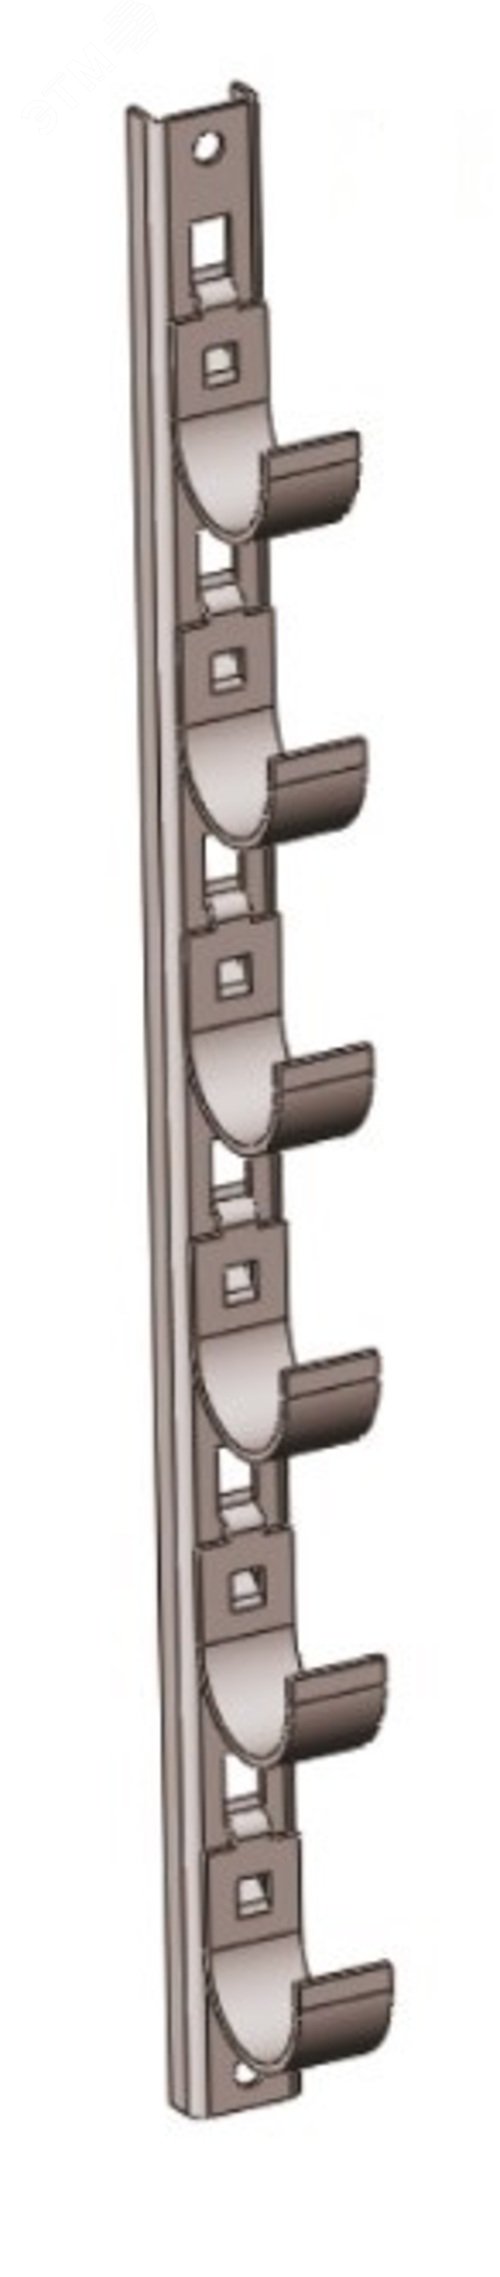 Кронштейн рожковый прямолинейный Р1В11 с 11 рожками, , без покрытия, S3,0,  L1440 П0000003009 Завод ЭМИ Курган